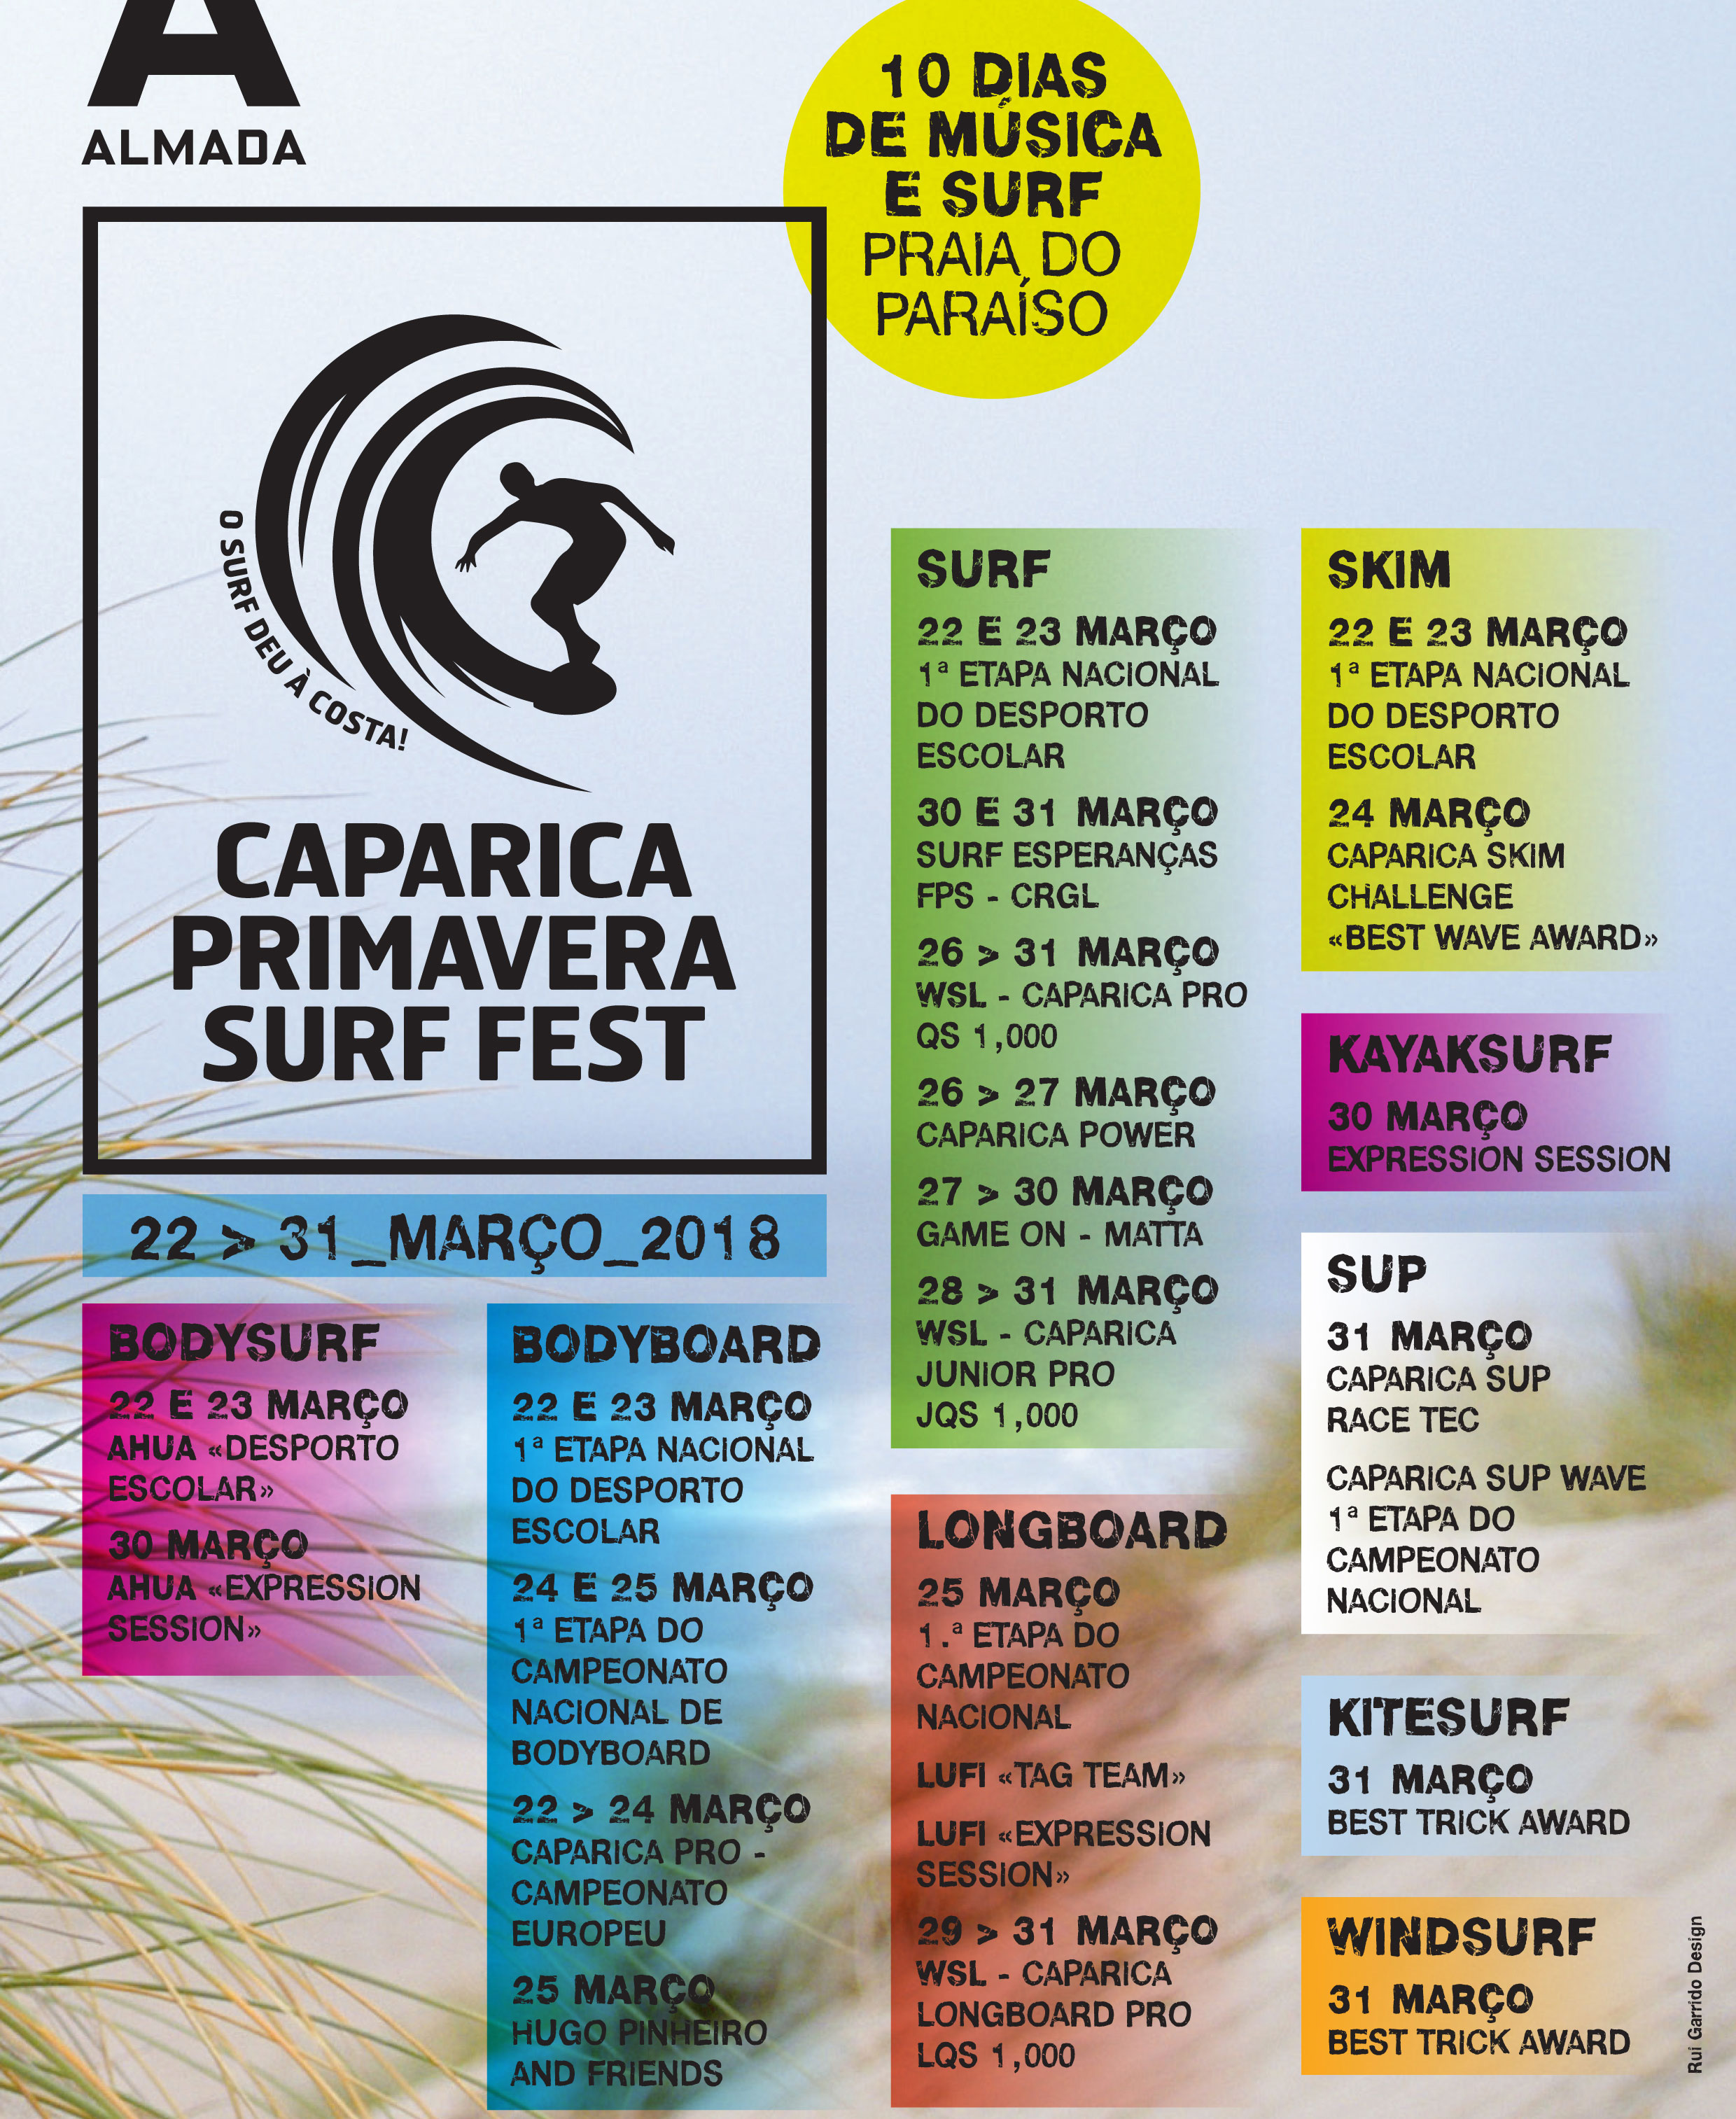 Caparica Primavera Surf Fest